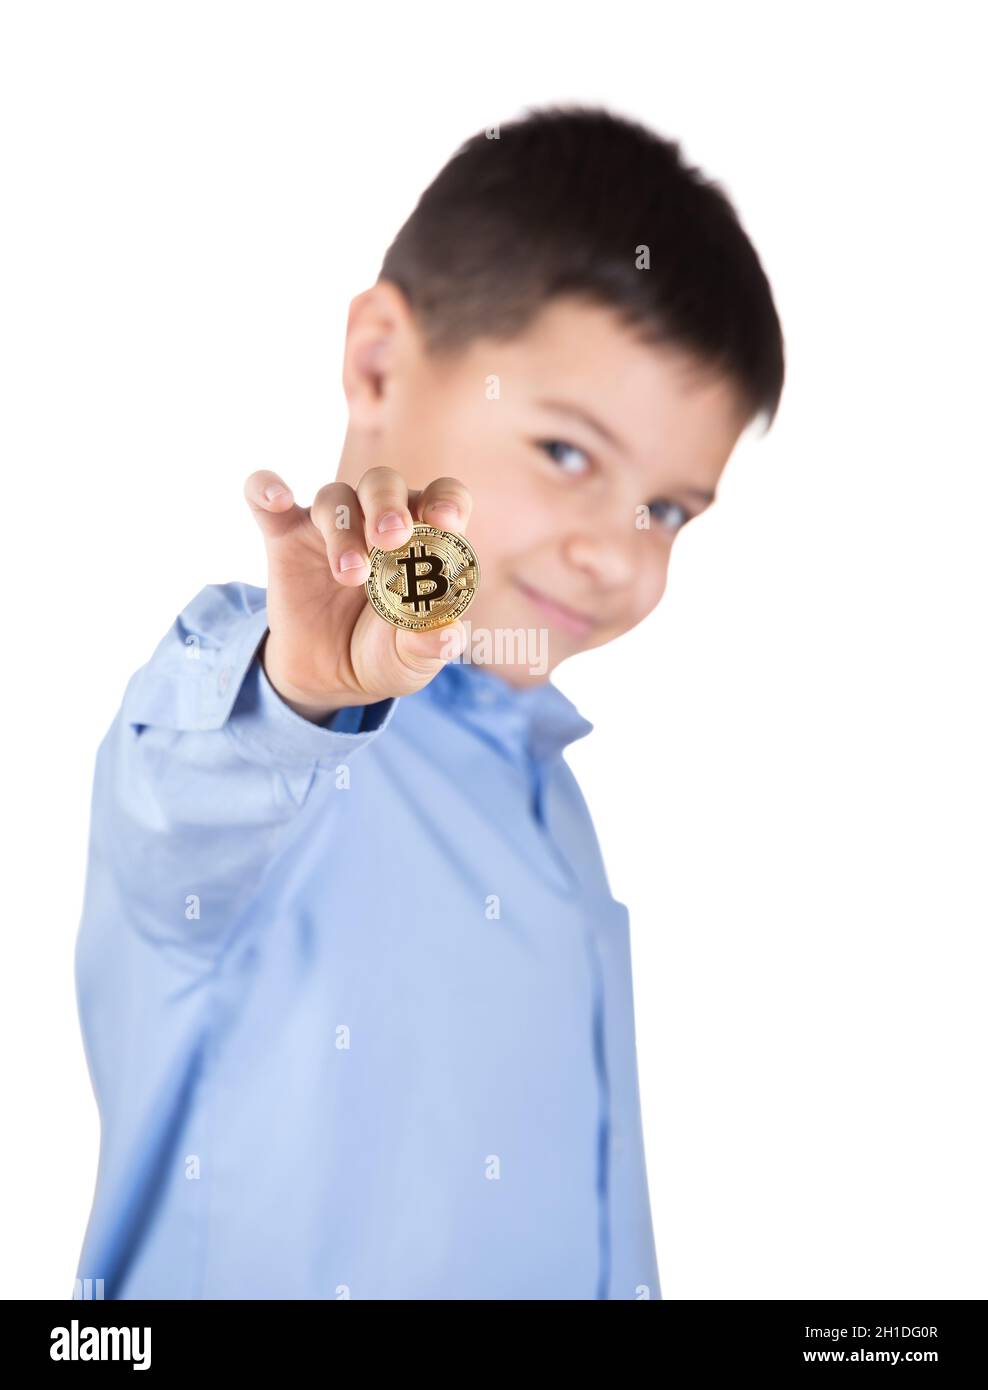 Junge in blauem Hemd hält Beatcoin in seiner ausgestreckten Hand und lächelt. Isoliert auf weißem Hintergrund. Unscharfer Hintergrund. Das Konzept von Bitcoin als Stockfoto